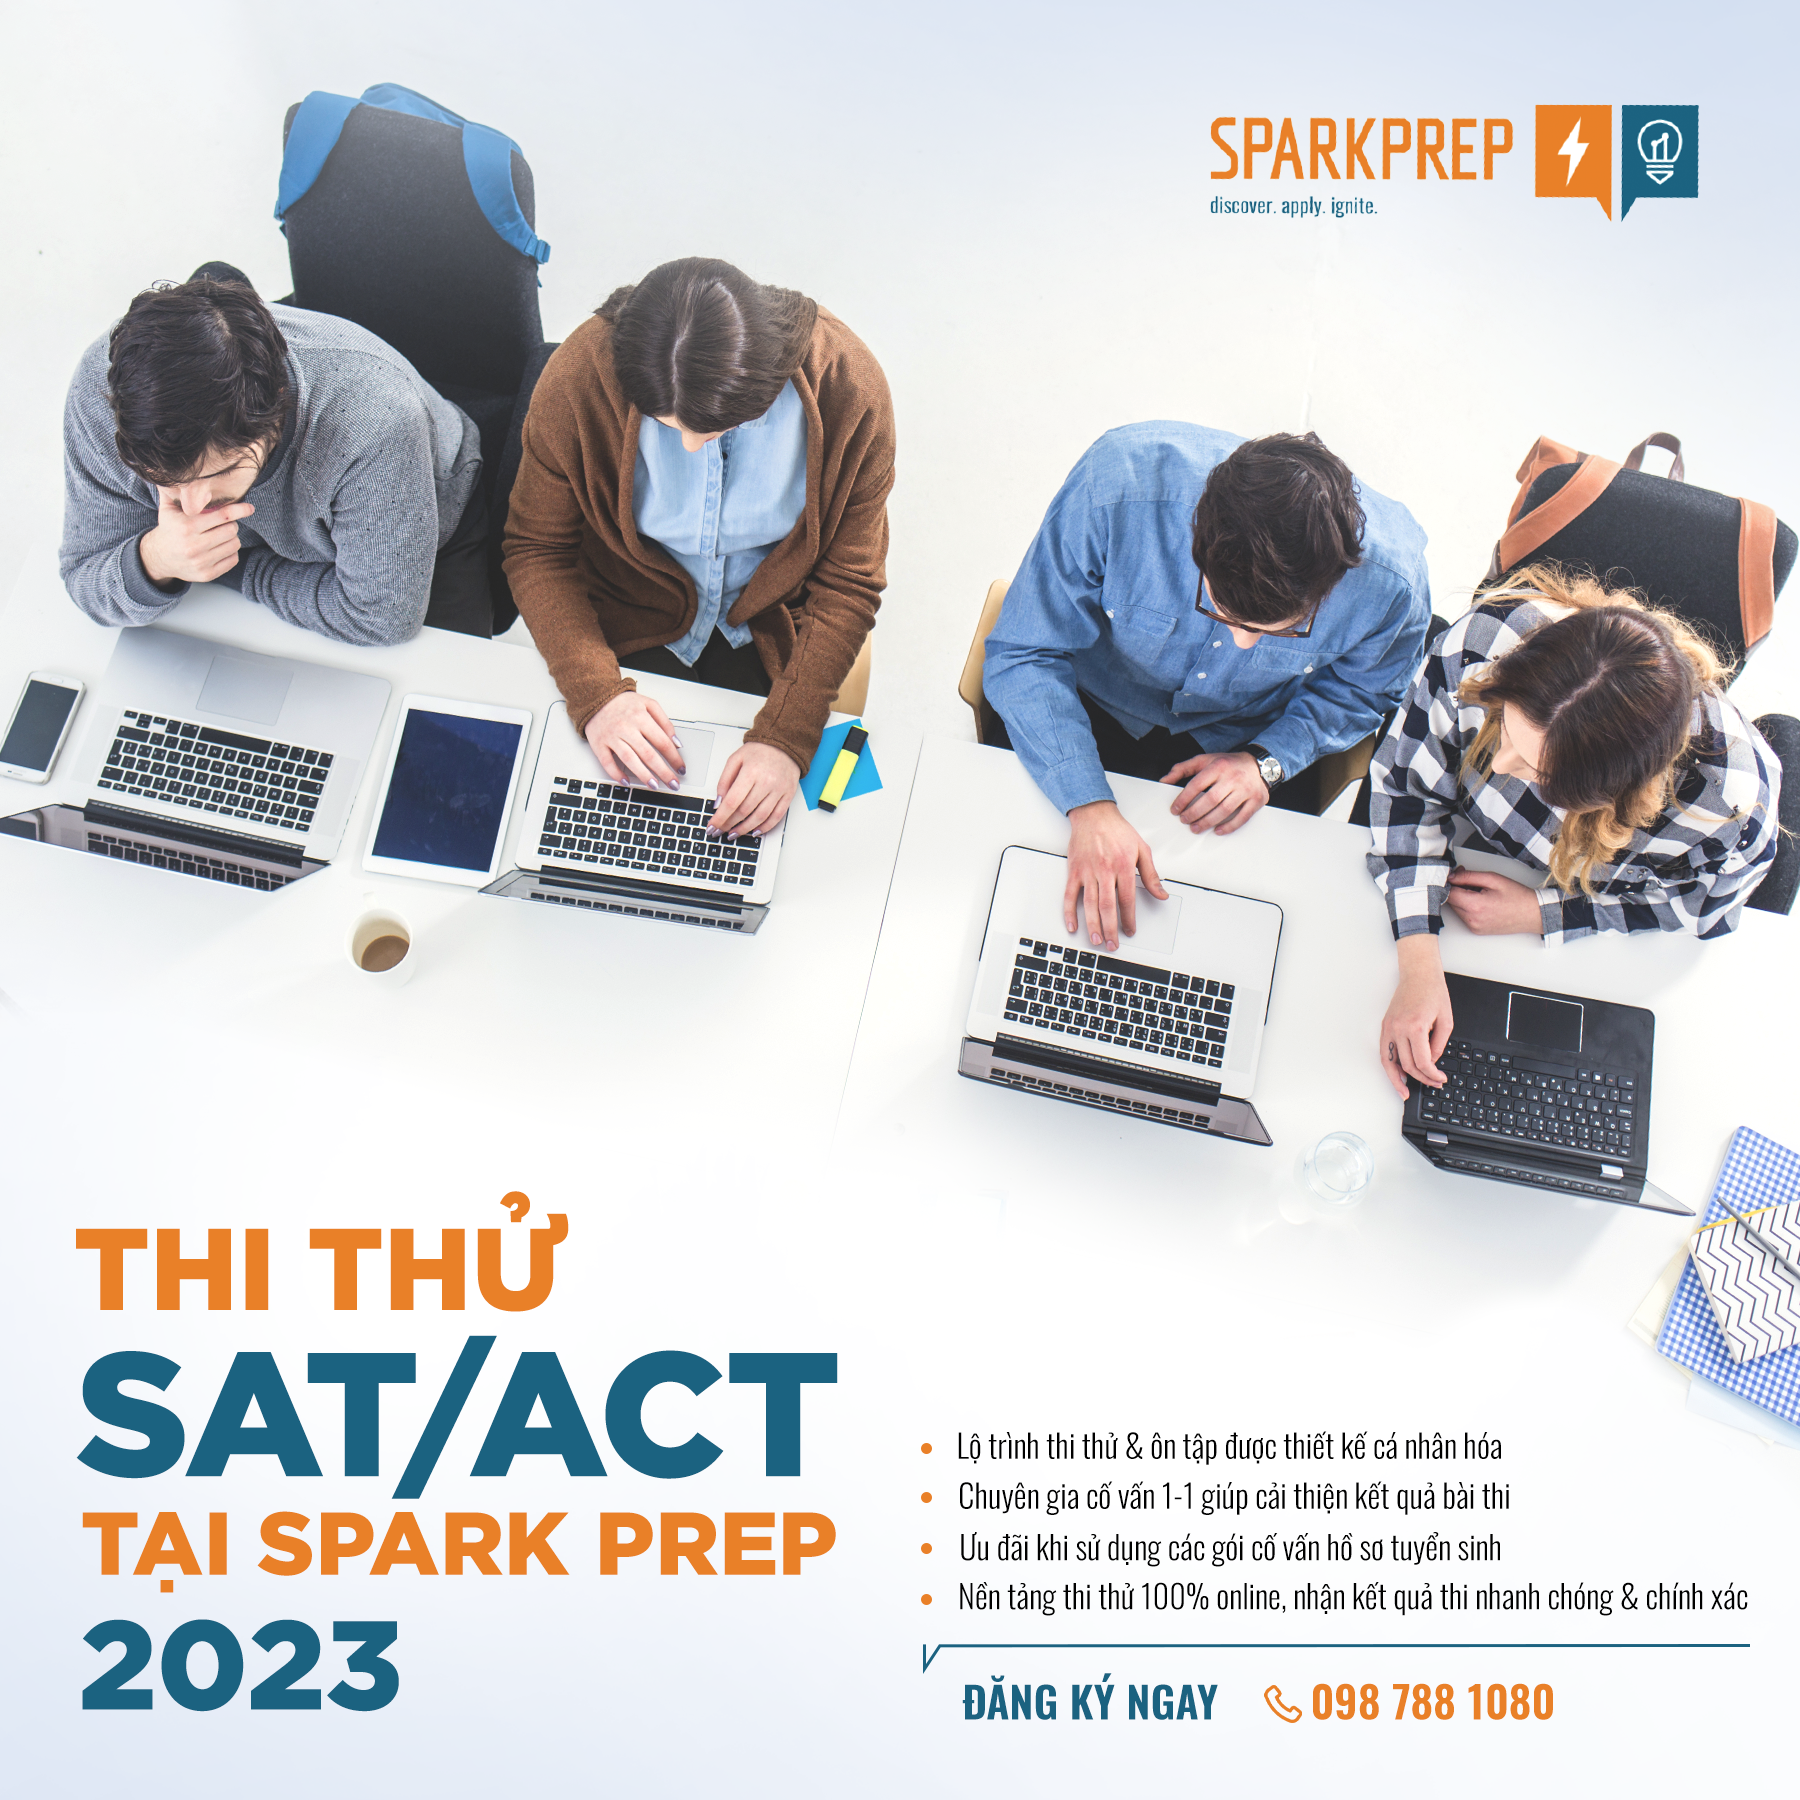 Chương trình thi thử SAT/ACT tại Spark Prep 2023